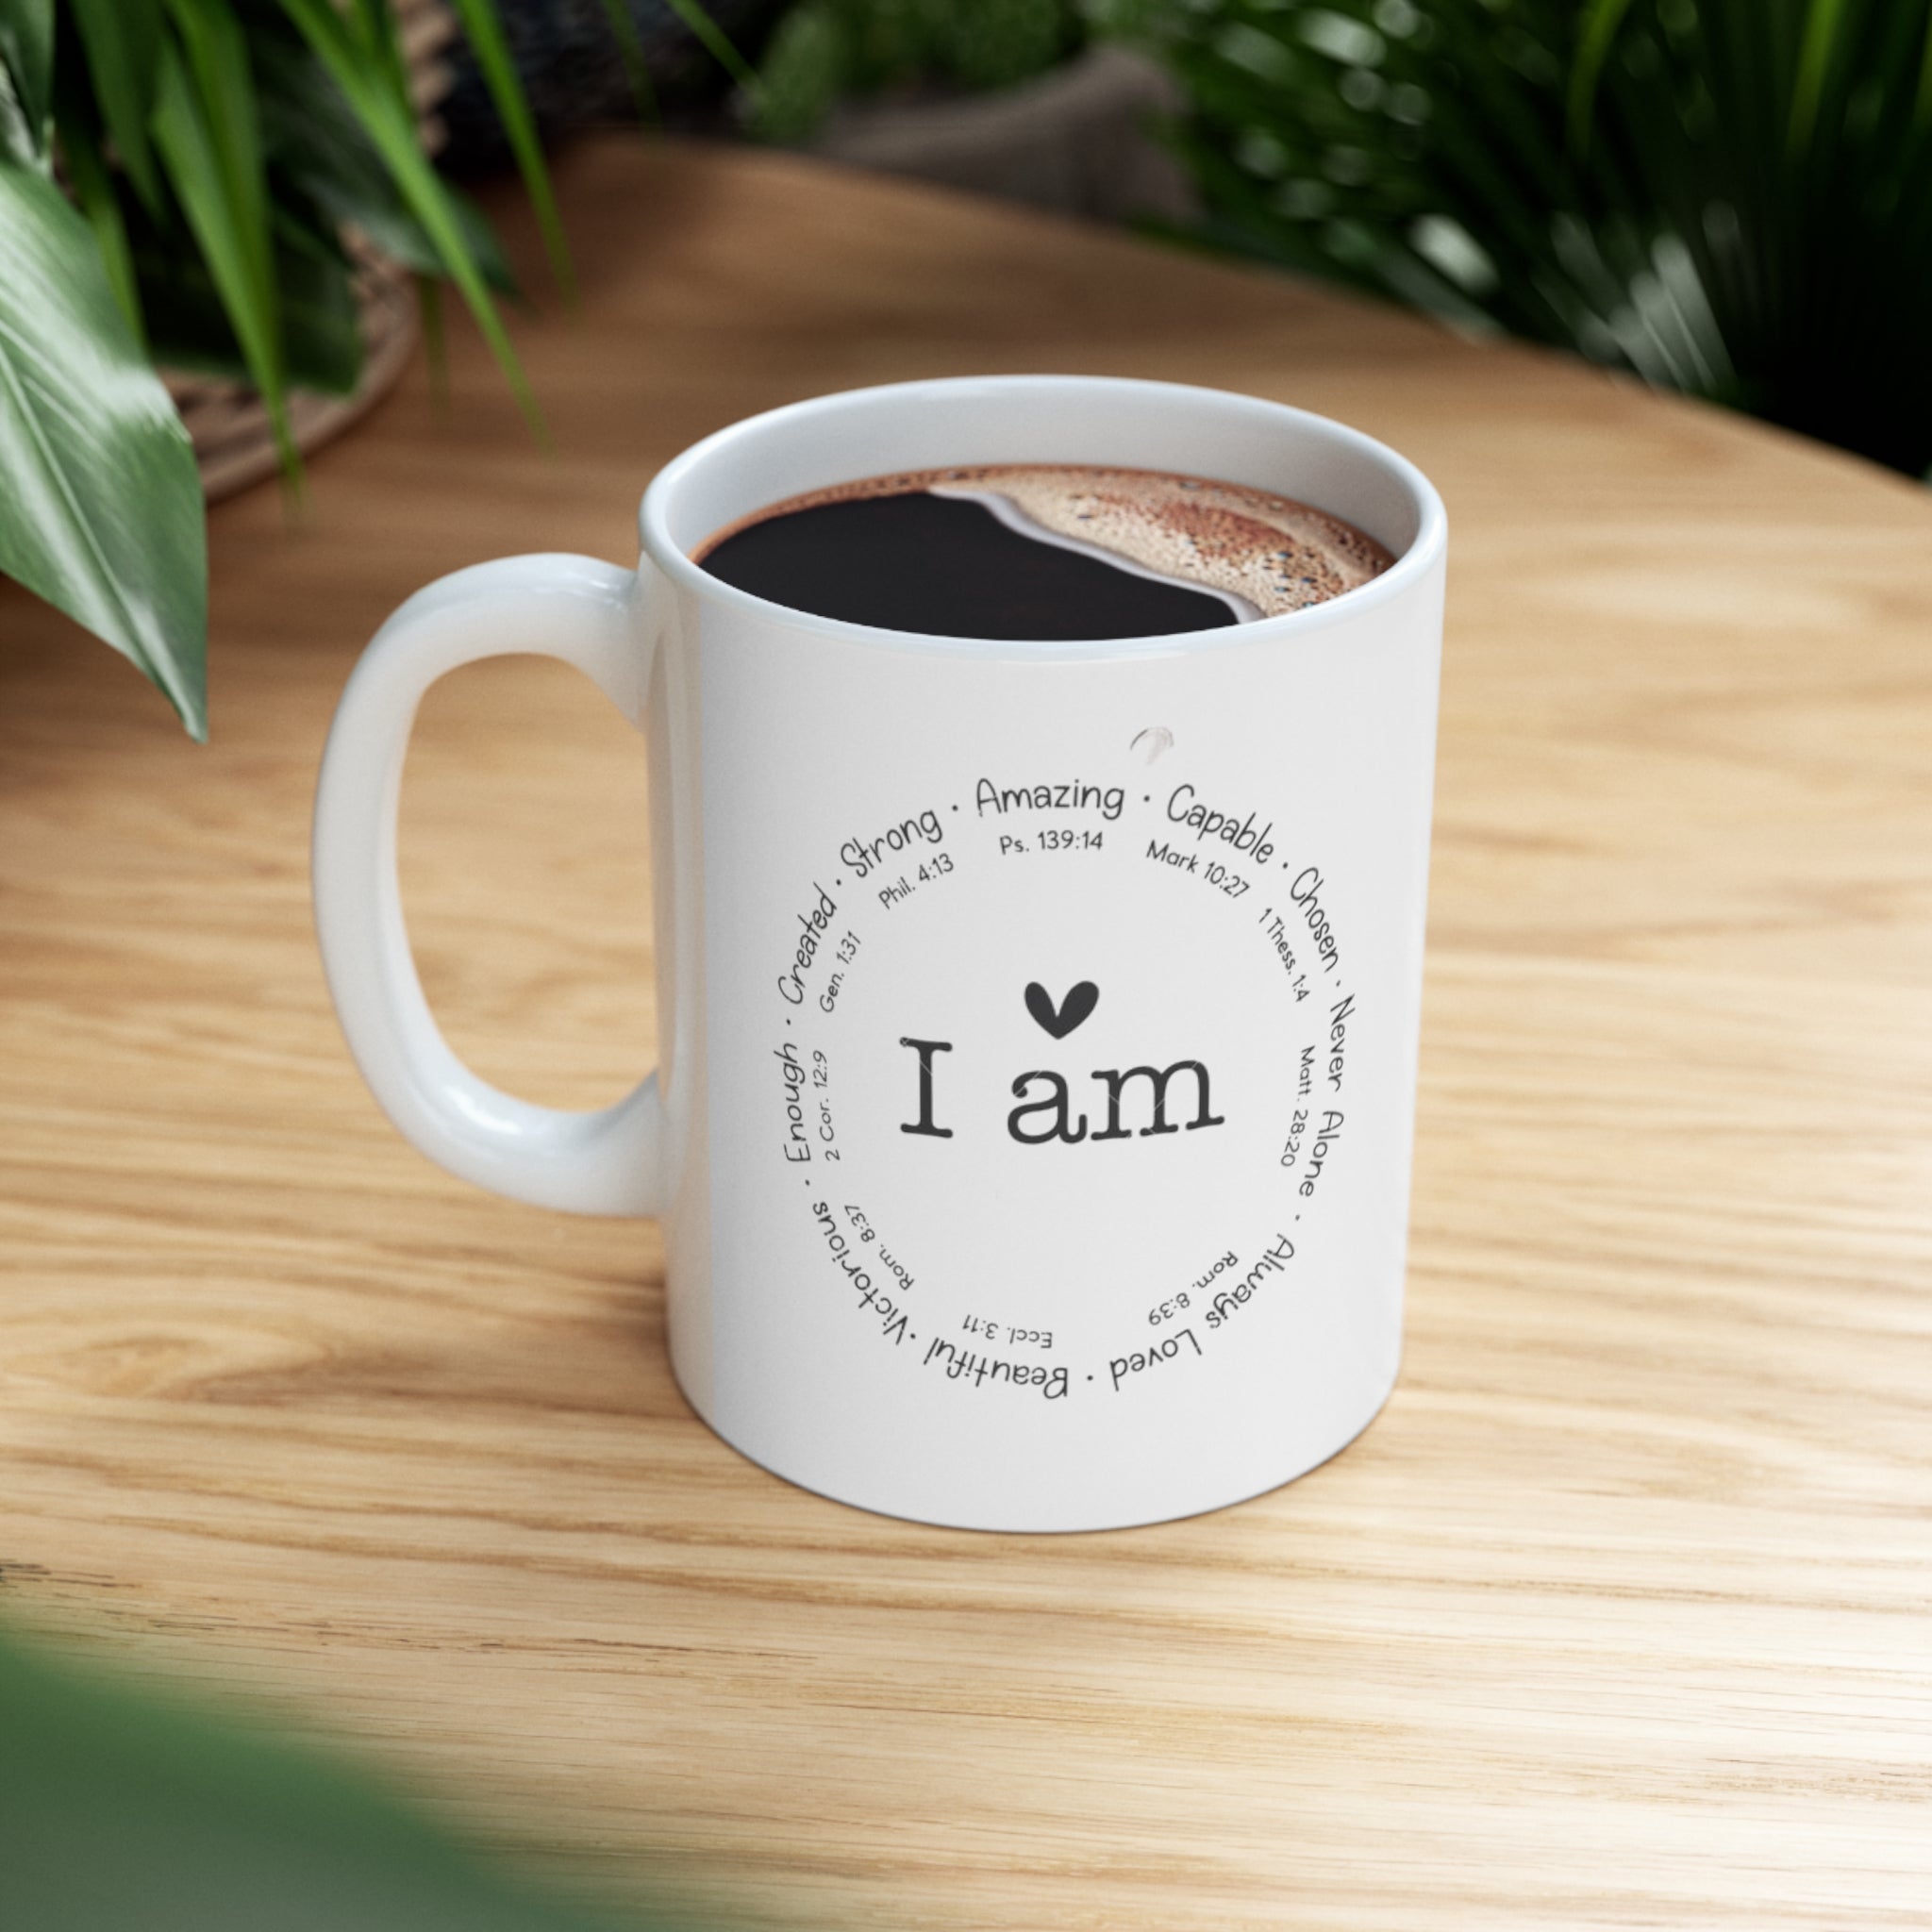 "I AM" Ceramic Mug 11oz